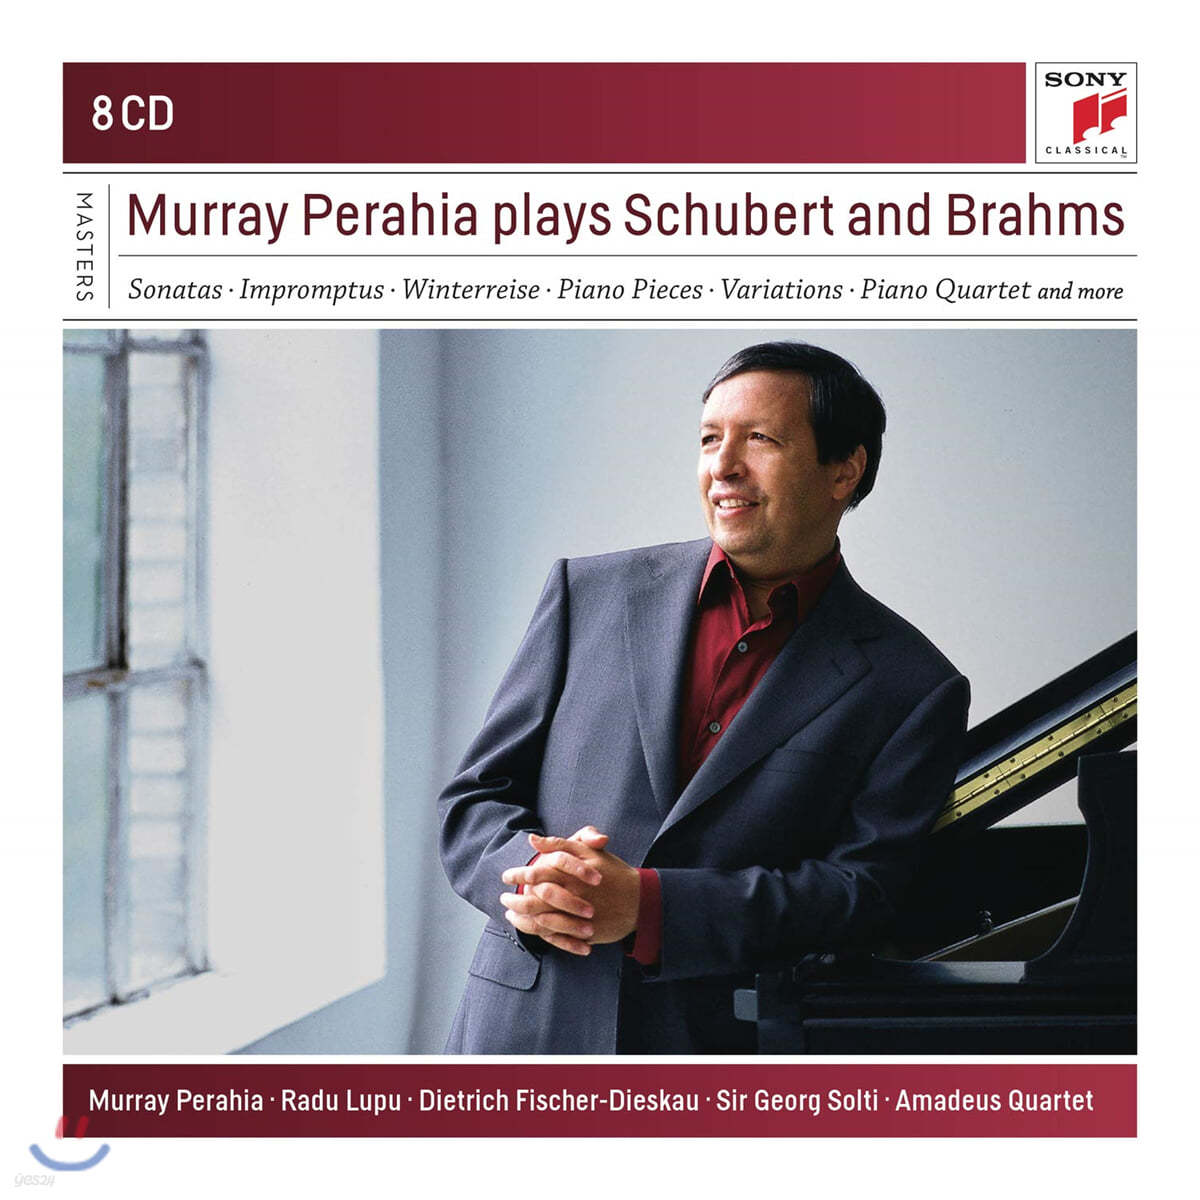 머레이 페라이어가 연주하는 슈베르트 &amp; 브람스 (Murray Perahia Plays Schubert and Brahms) 